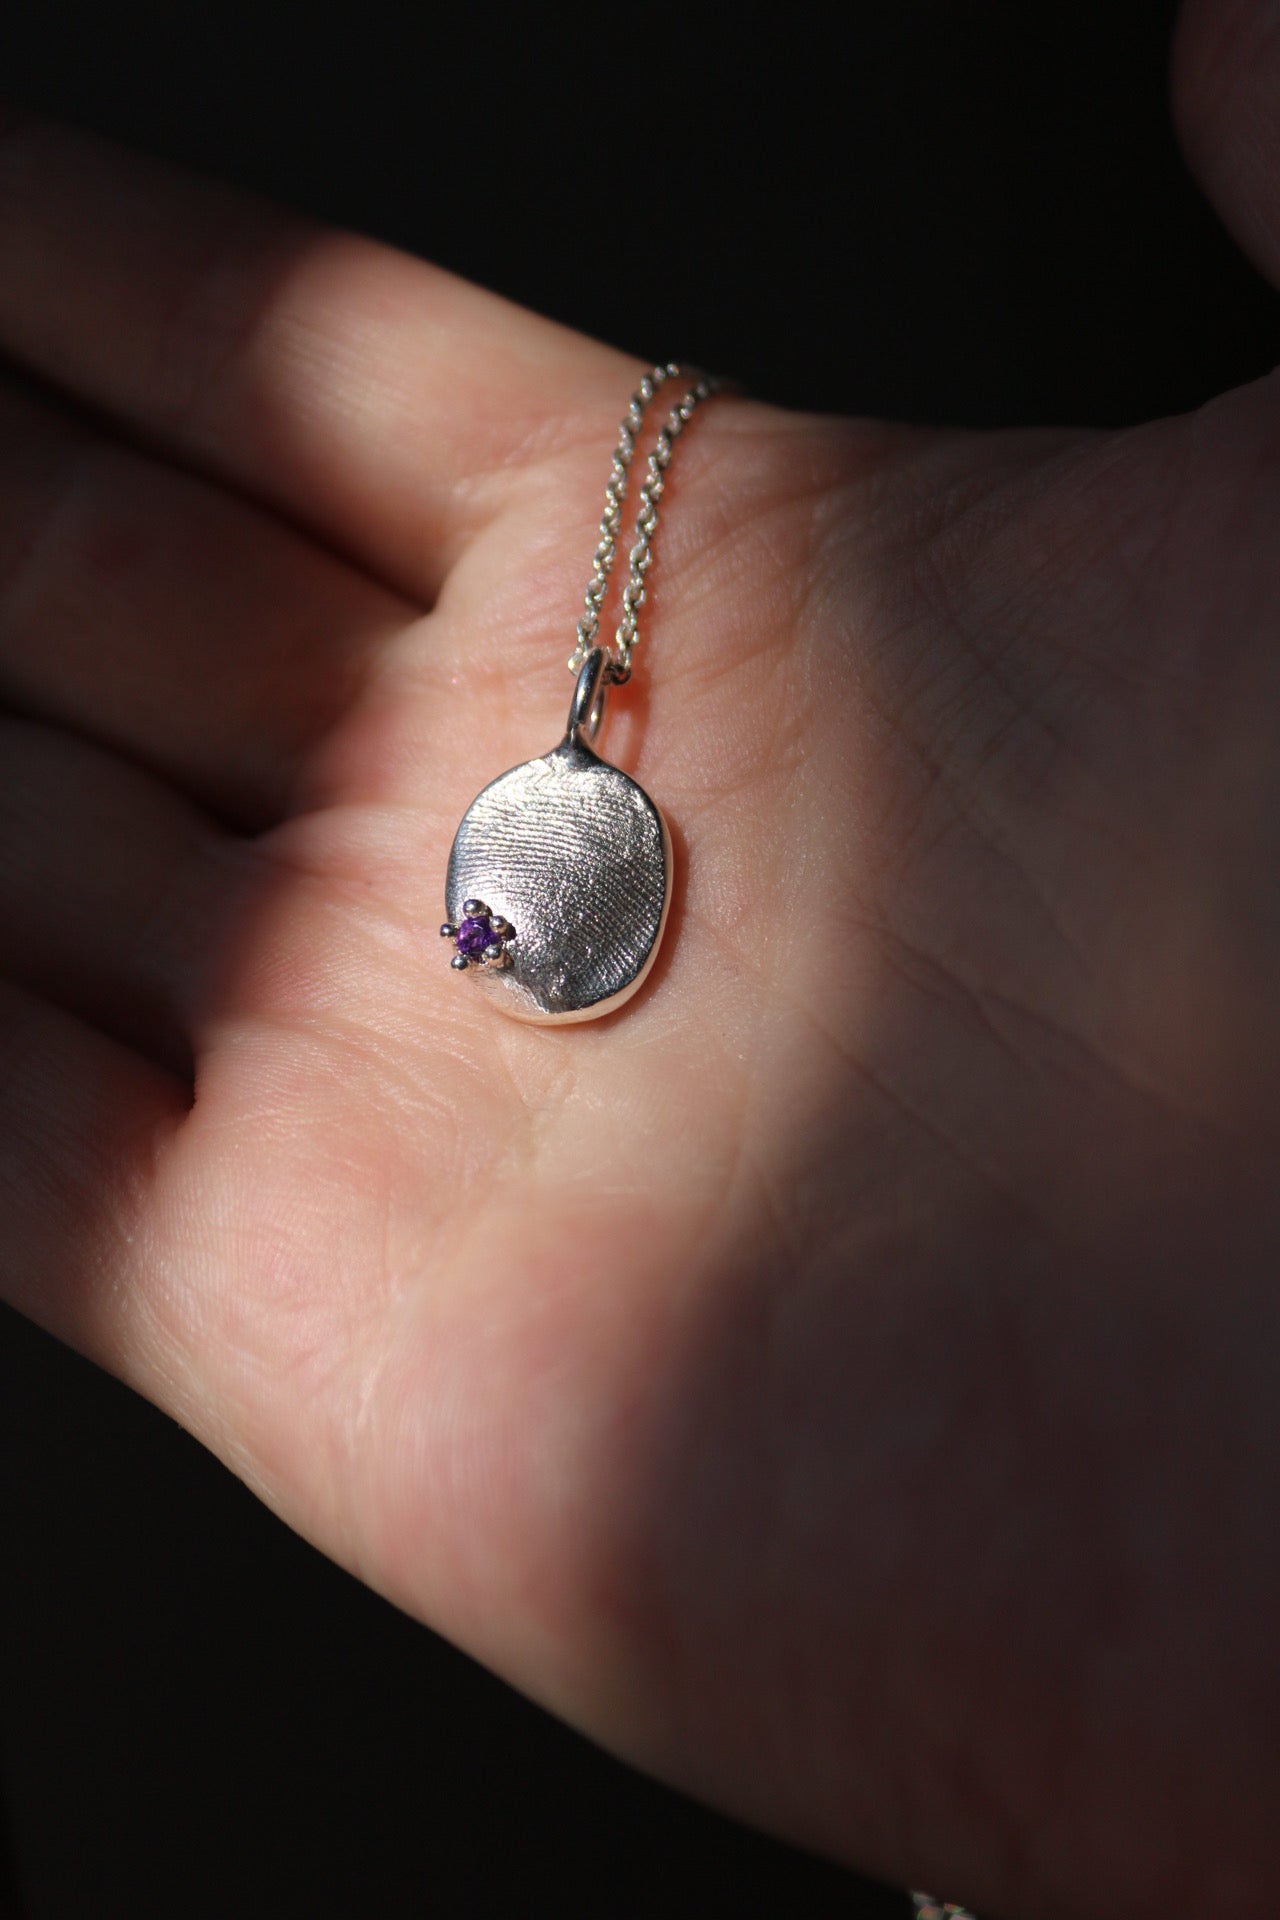 Gemstone + Fingerprint Pendant - Sterling Silver or 9ct Gold - Impression Kit + Necklace